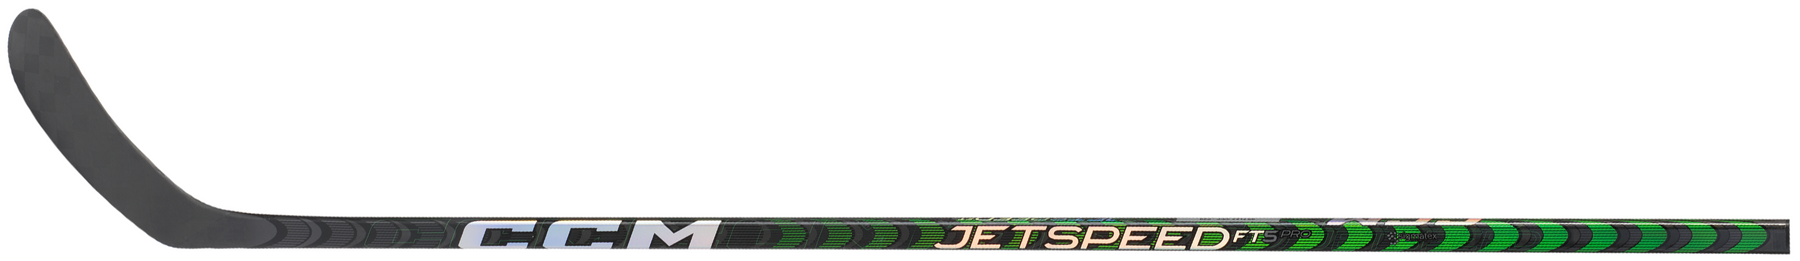 CCM JetSpeed FT5 Pro bâton de hockey junior (vert)